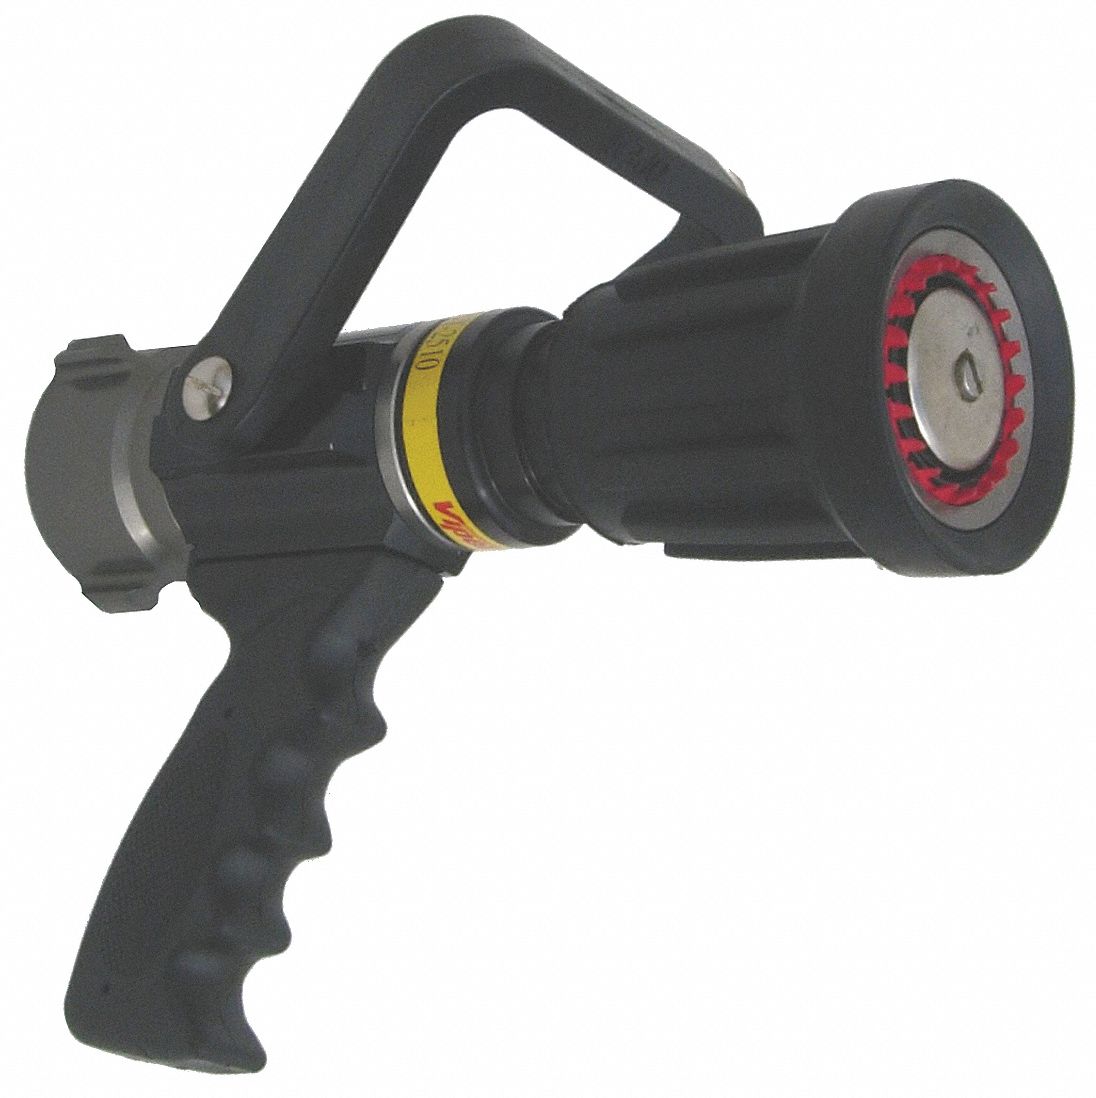 Fire Hose Nozzle: Constant Pressure, Constant Pressure (Auto), Solid Stream, ST2510-PV